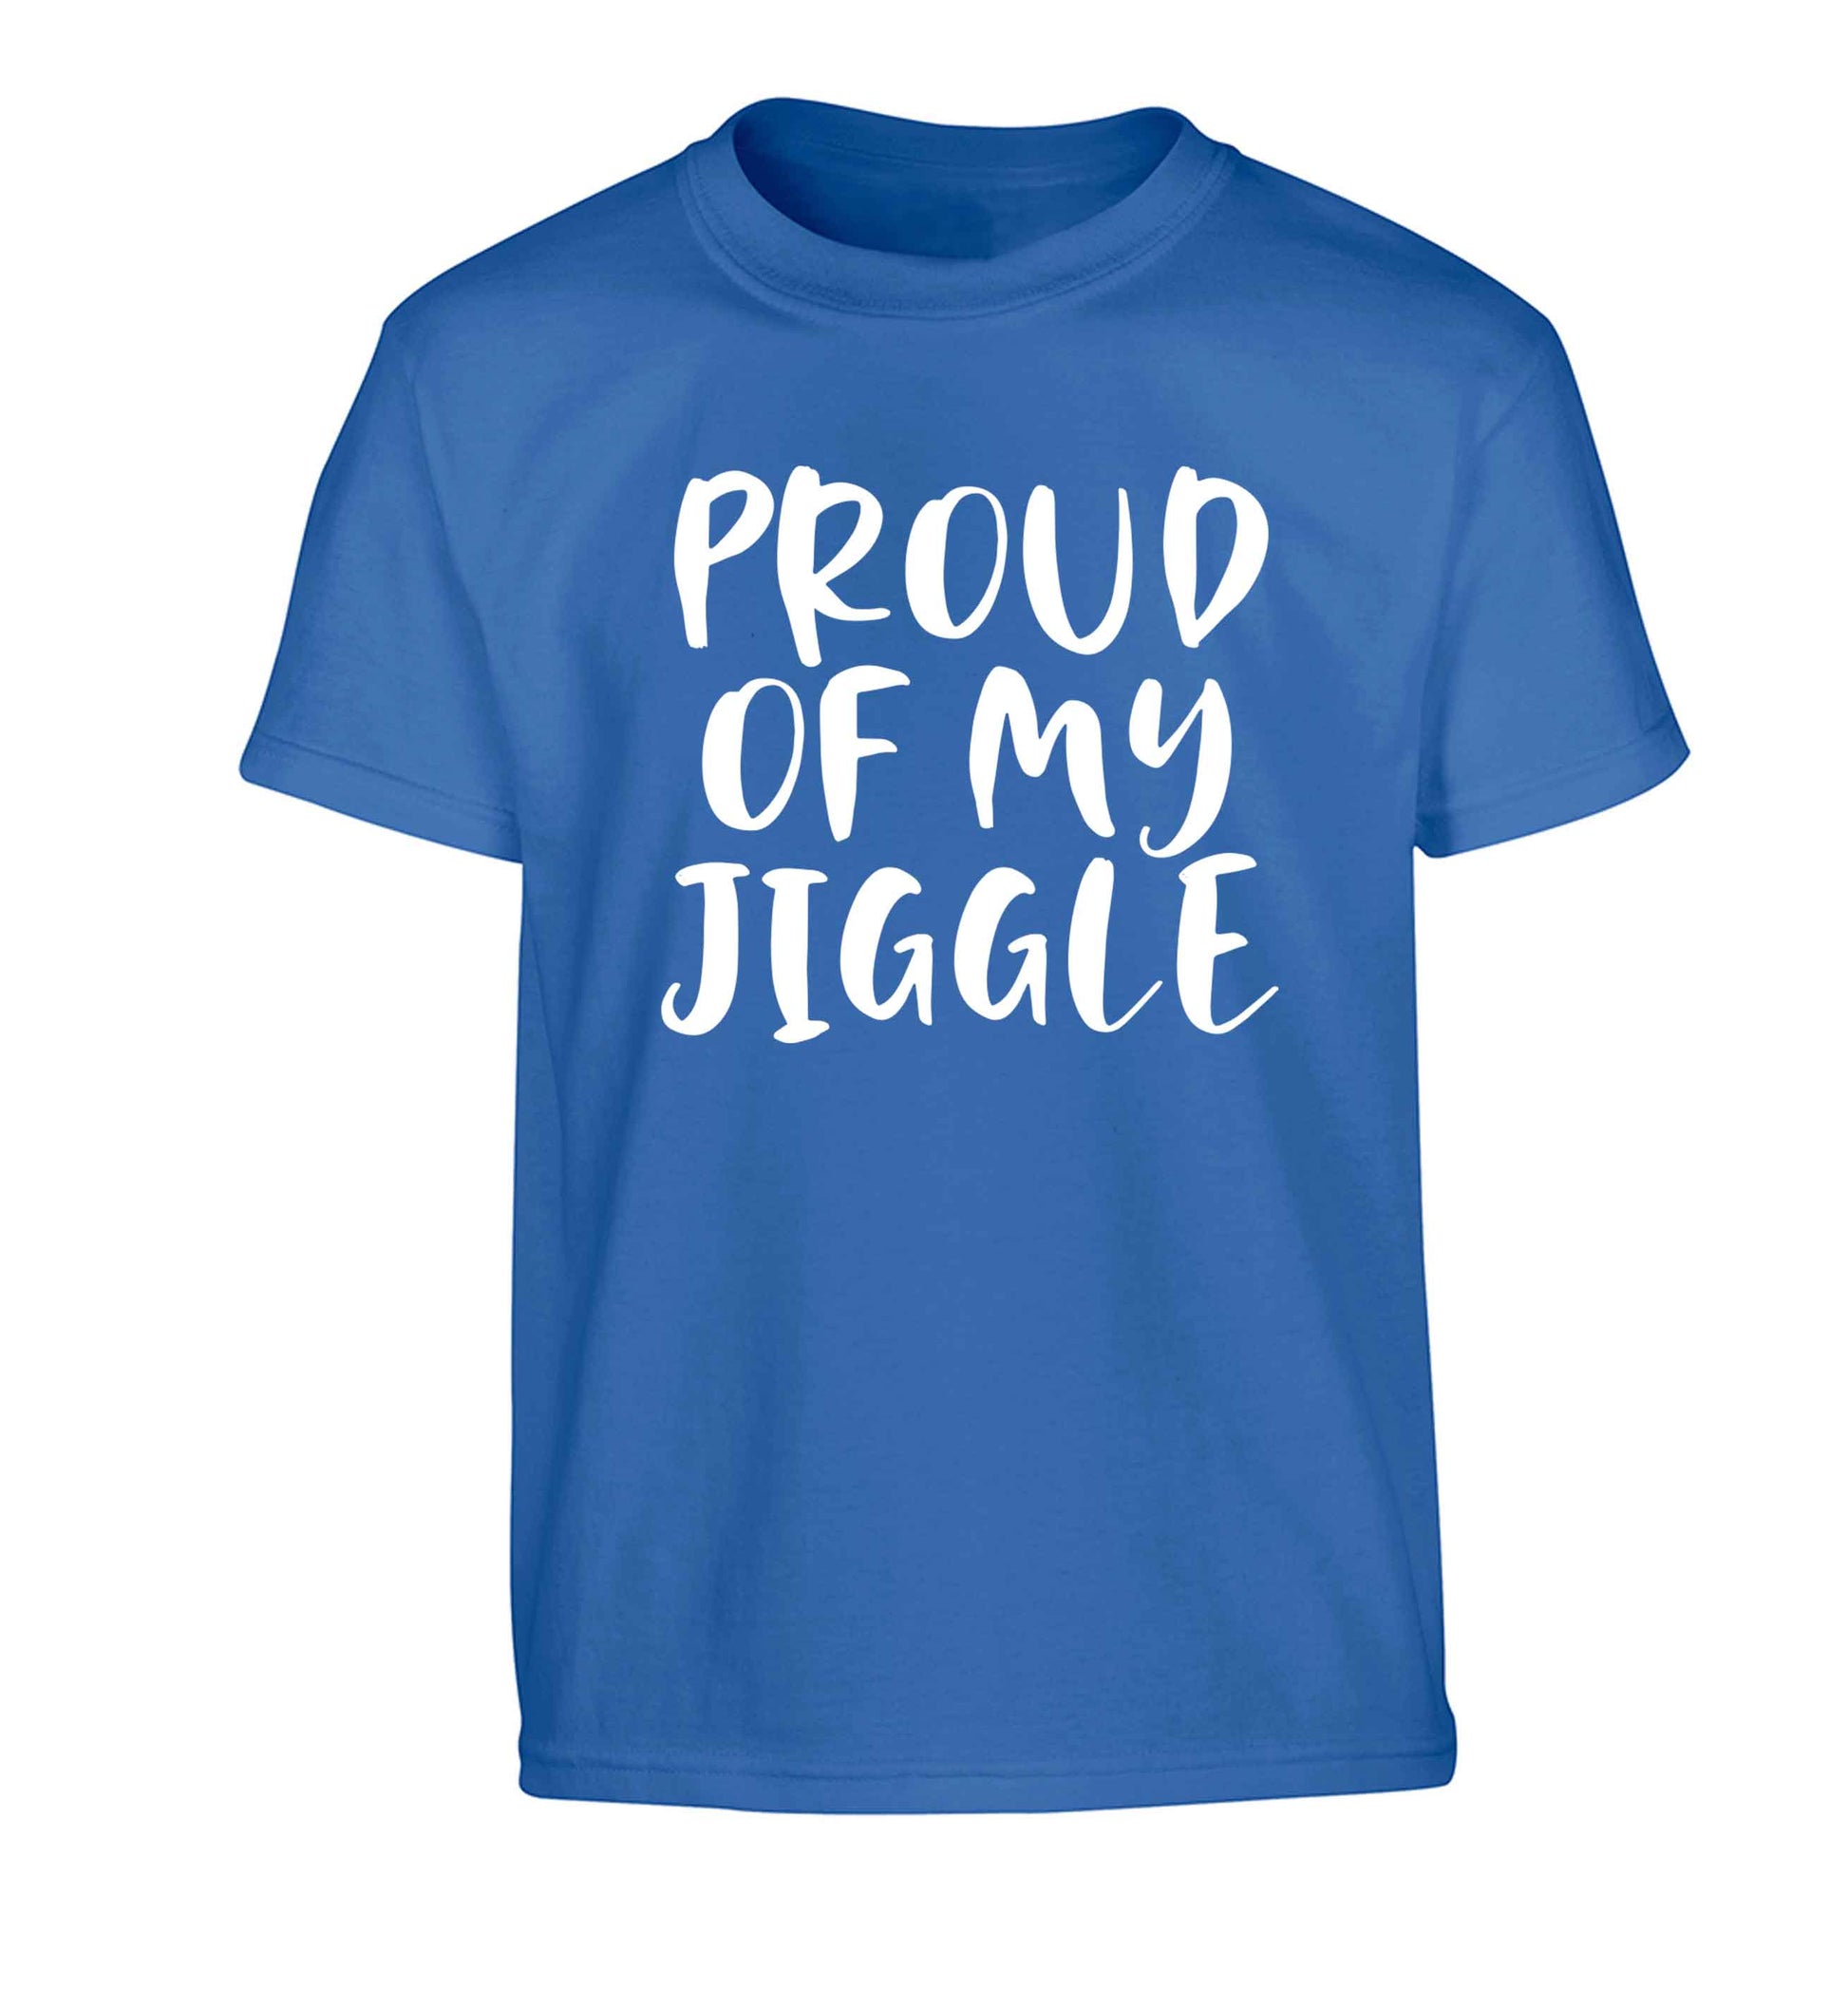 Proud of my jiggle Children's blue Tshirt 12-13 Years